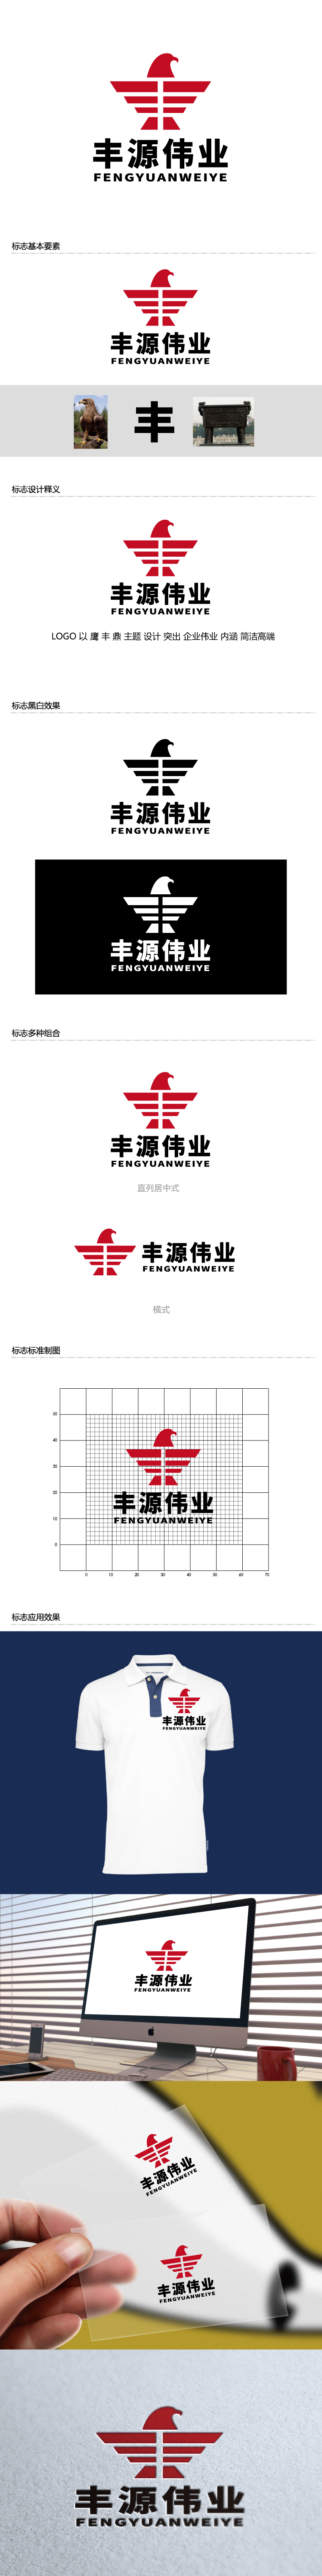 张俊的北京丰源伟业建筑装饰工程有限公司logo设计